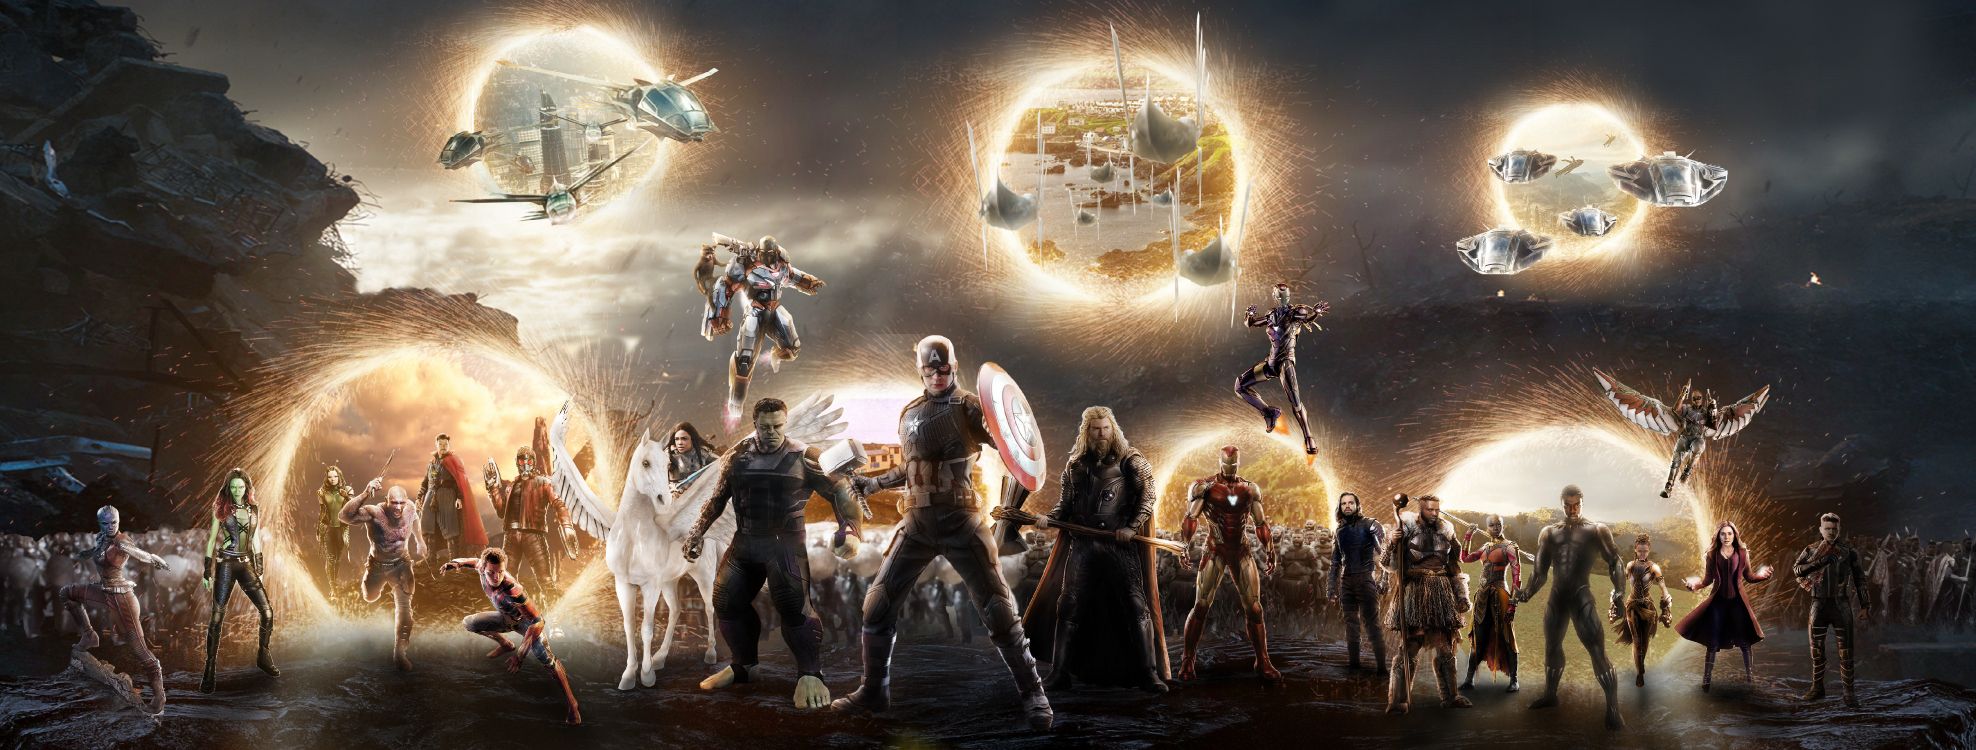 Réunion de Justiciers, Captain America, Thanos, L'homme de Fer, Vengeur. Wallpaper in 6481x2459 Resolution